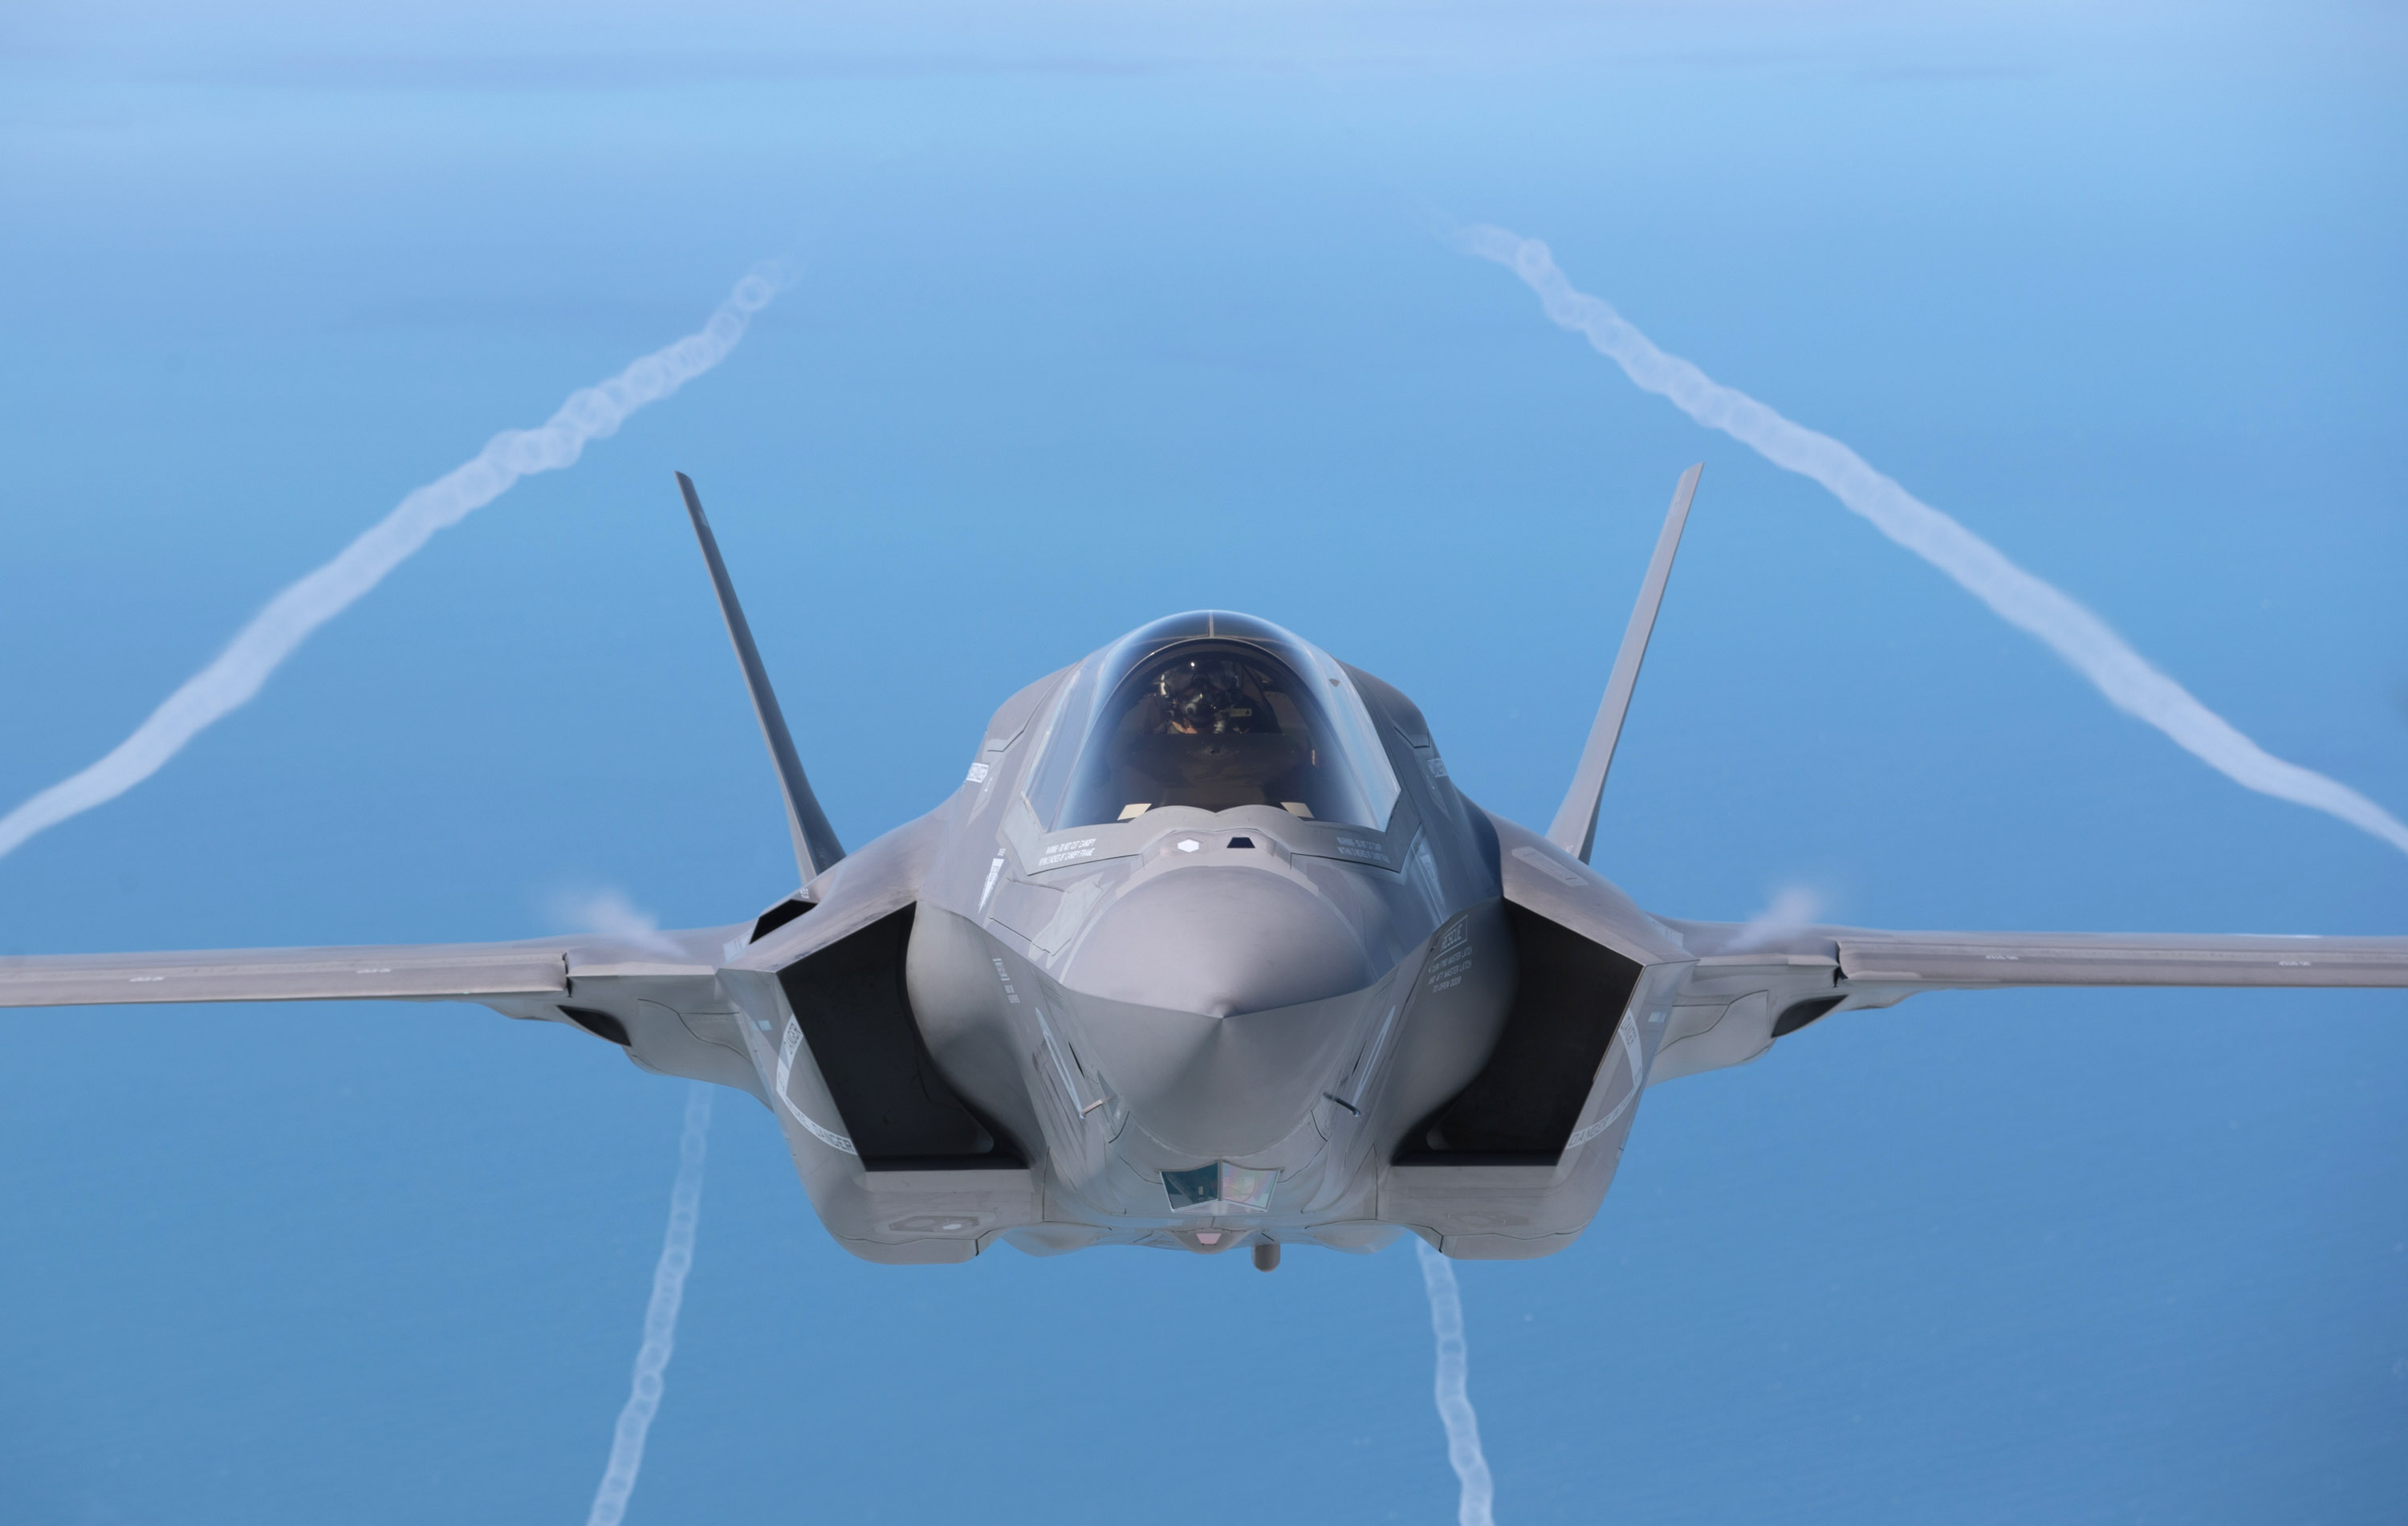 Washington nem szállítja le az F-35-ös vadászgépek fogadásához szükséges felszereléseket Törökországnak